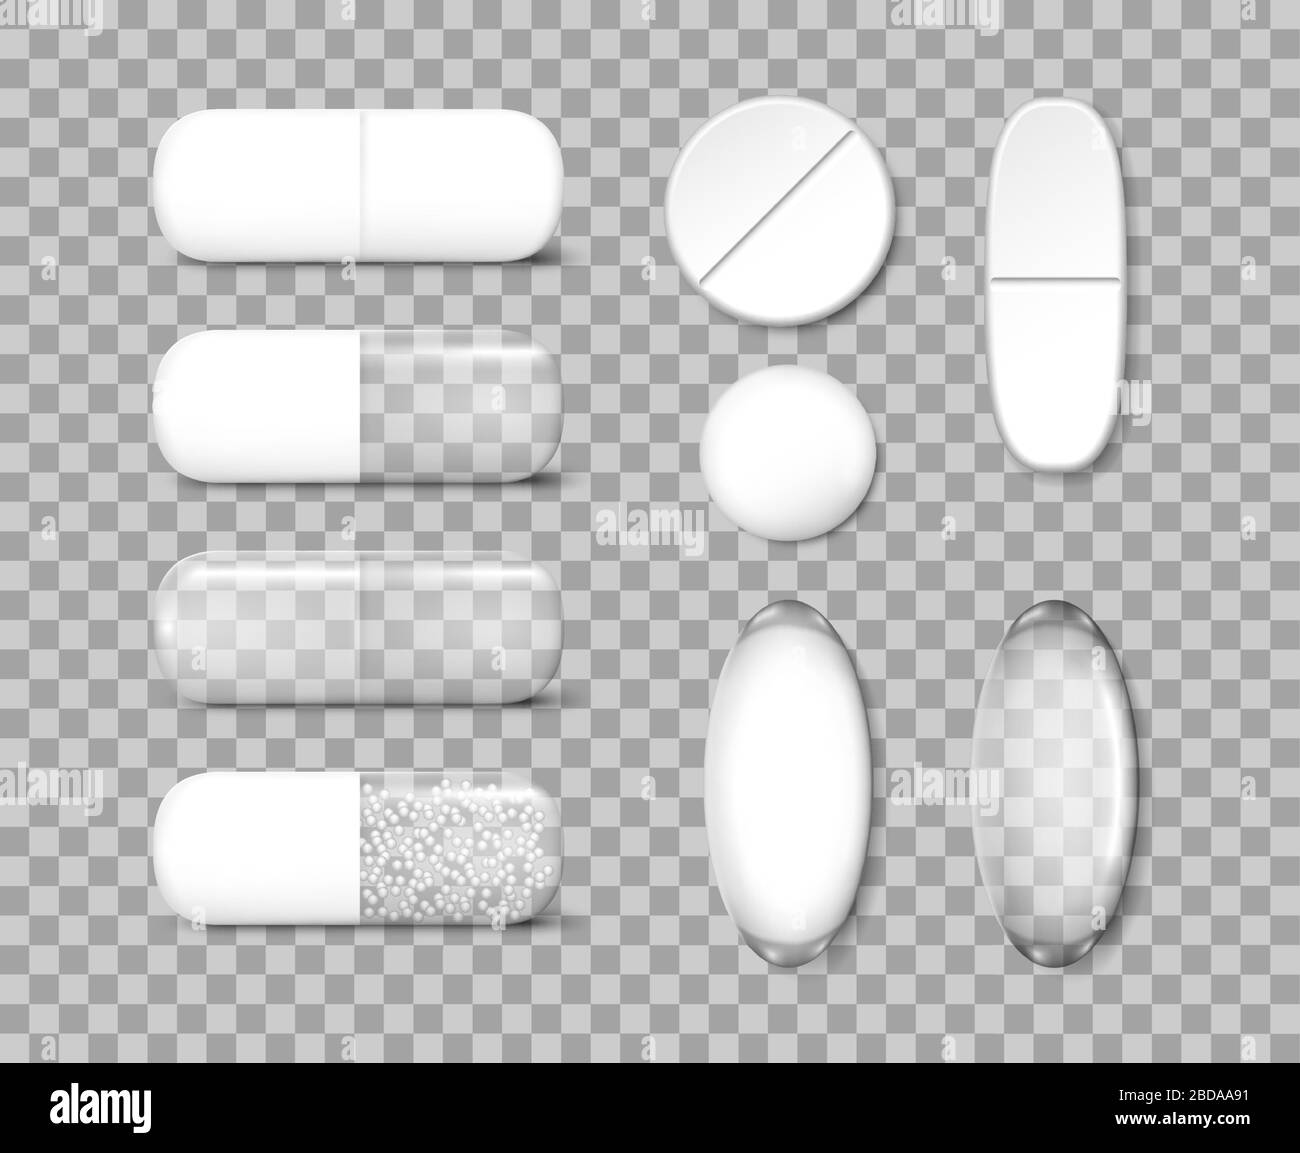 Medicine painkiller pills template. Antibiotic drugs and vitamin pill Mockup. Vector illustration Stock Vector